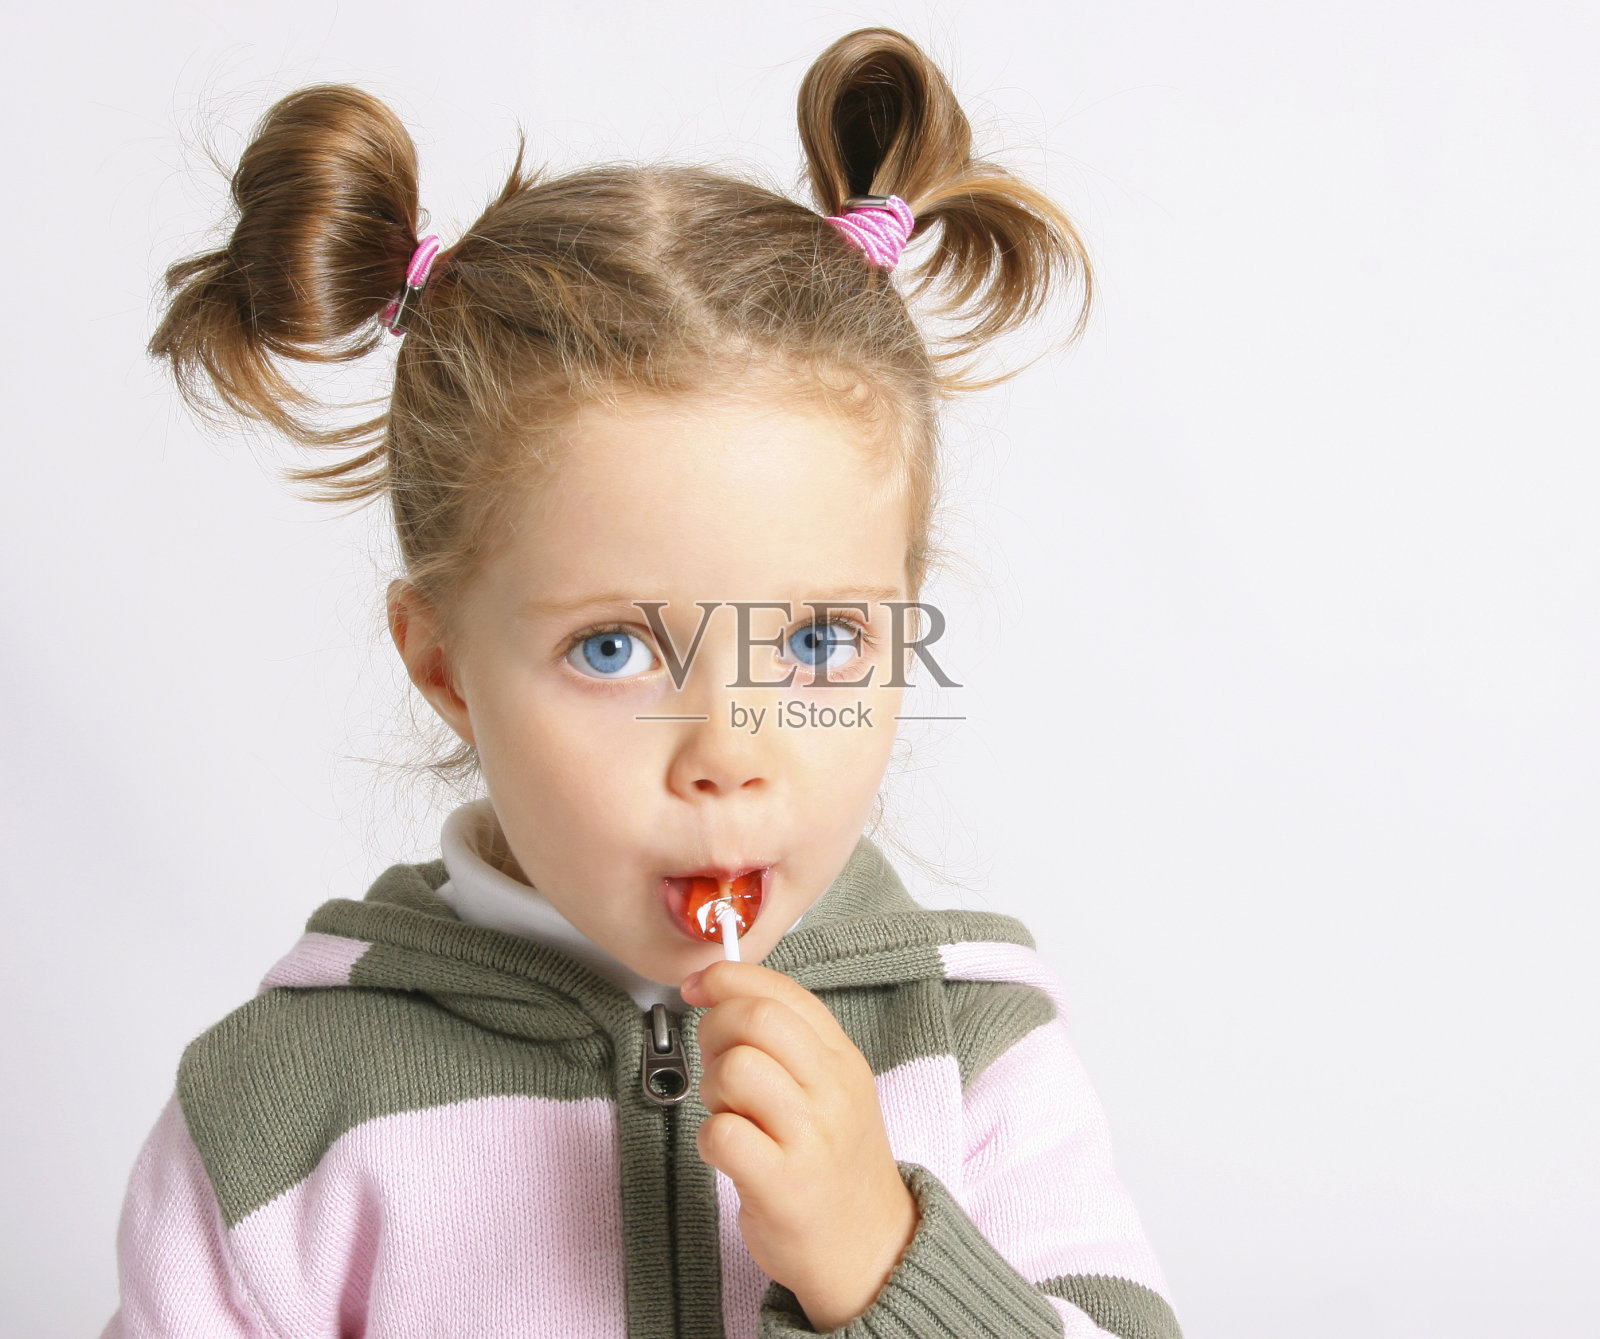 吃棒棒糖的滑稽的女孩 库存图片. 图片 包括有 颜色, 逗人喜爱, 童年, 子项, 表达式, 幸福, 愉快 - 112547869